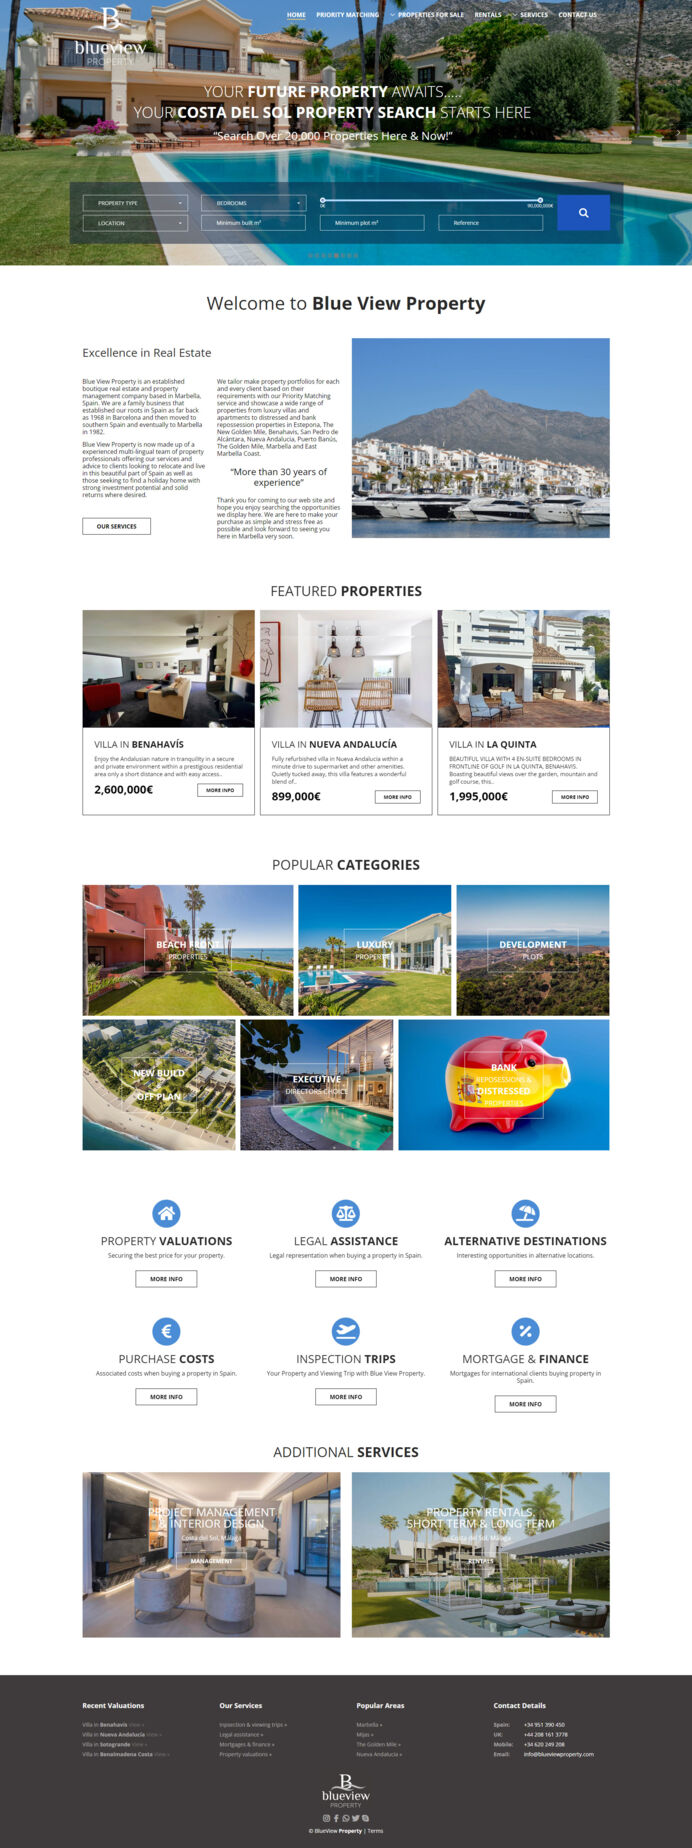  Nuevo diseño y desarrollo web para Blue View Properties Marbella – Diseño de página exclusivo, moderno y muy visual, integrado con un avanzado sistema de búsqueda inmobiliaria